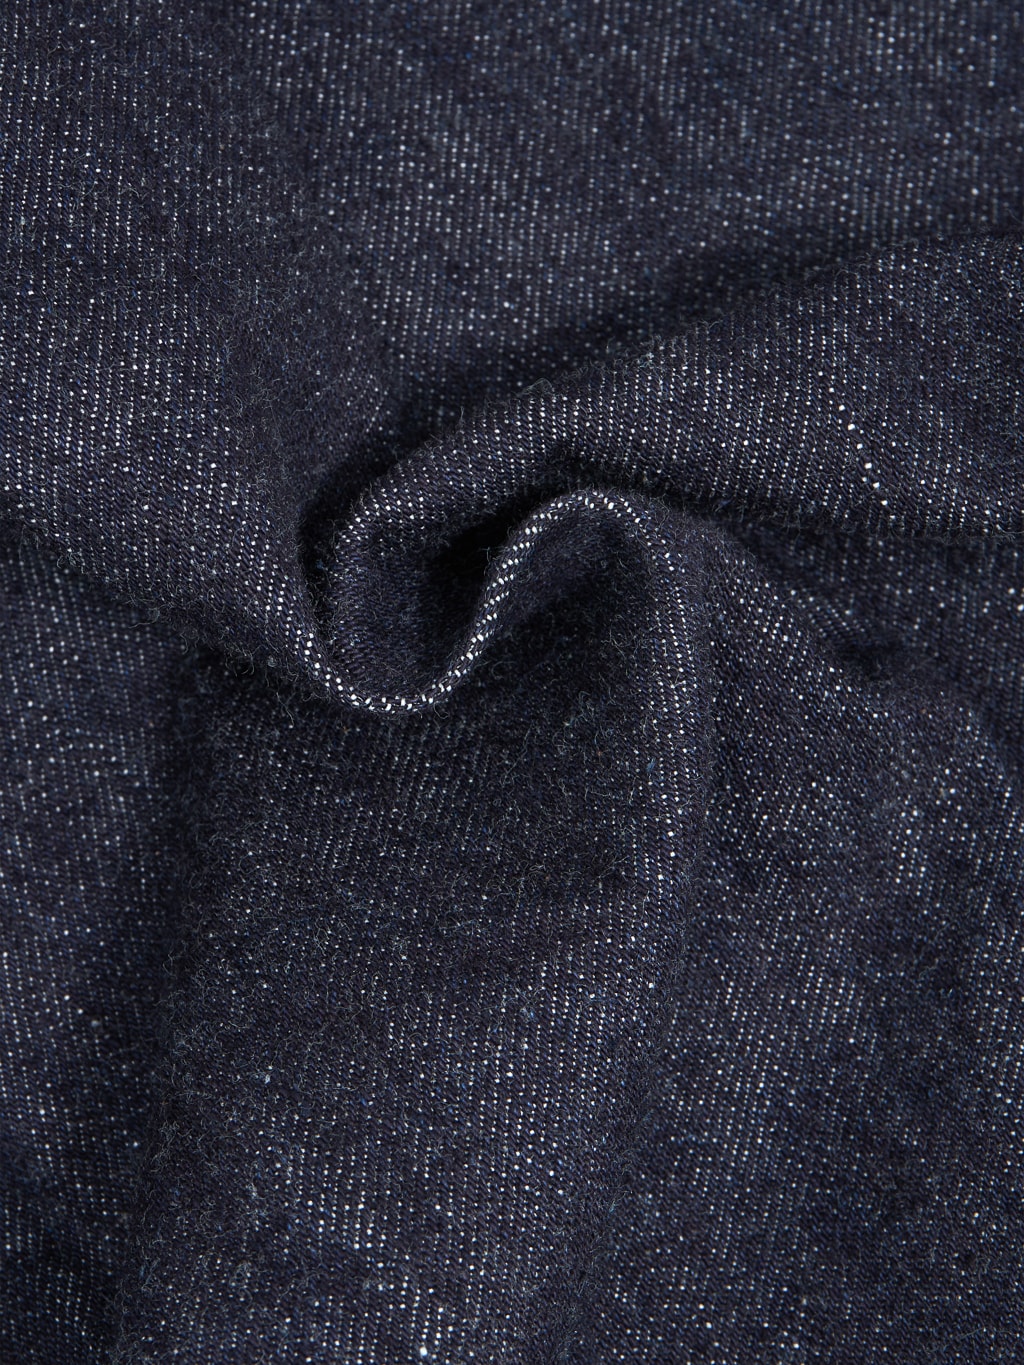 tcb 30s denim jacket cotton texture